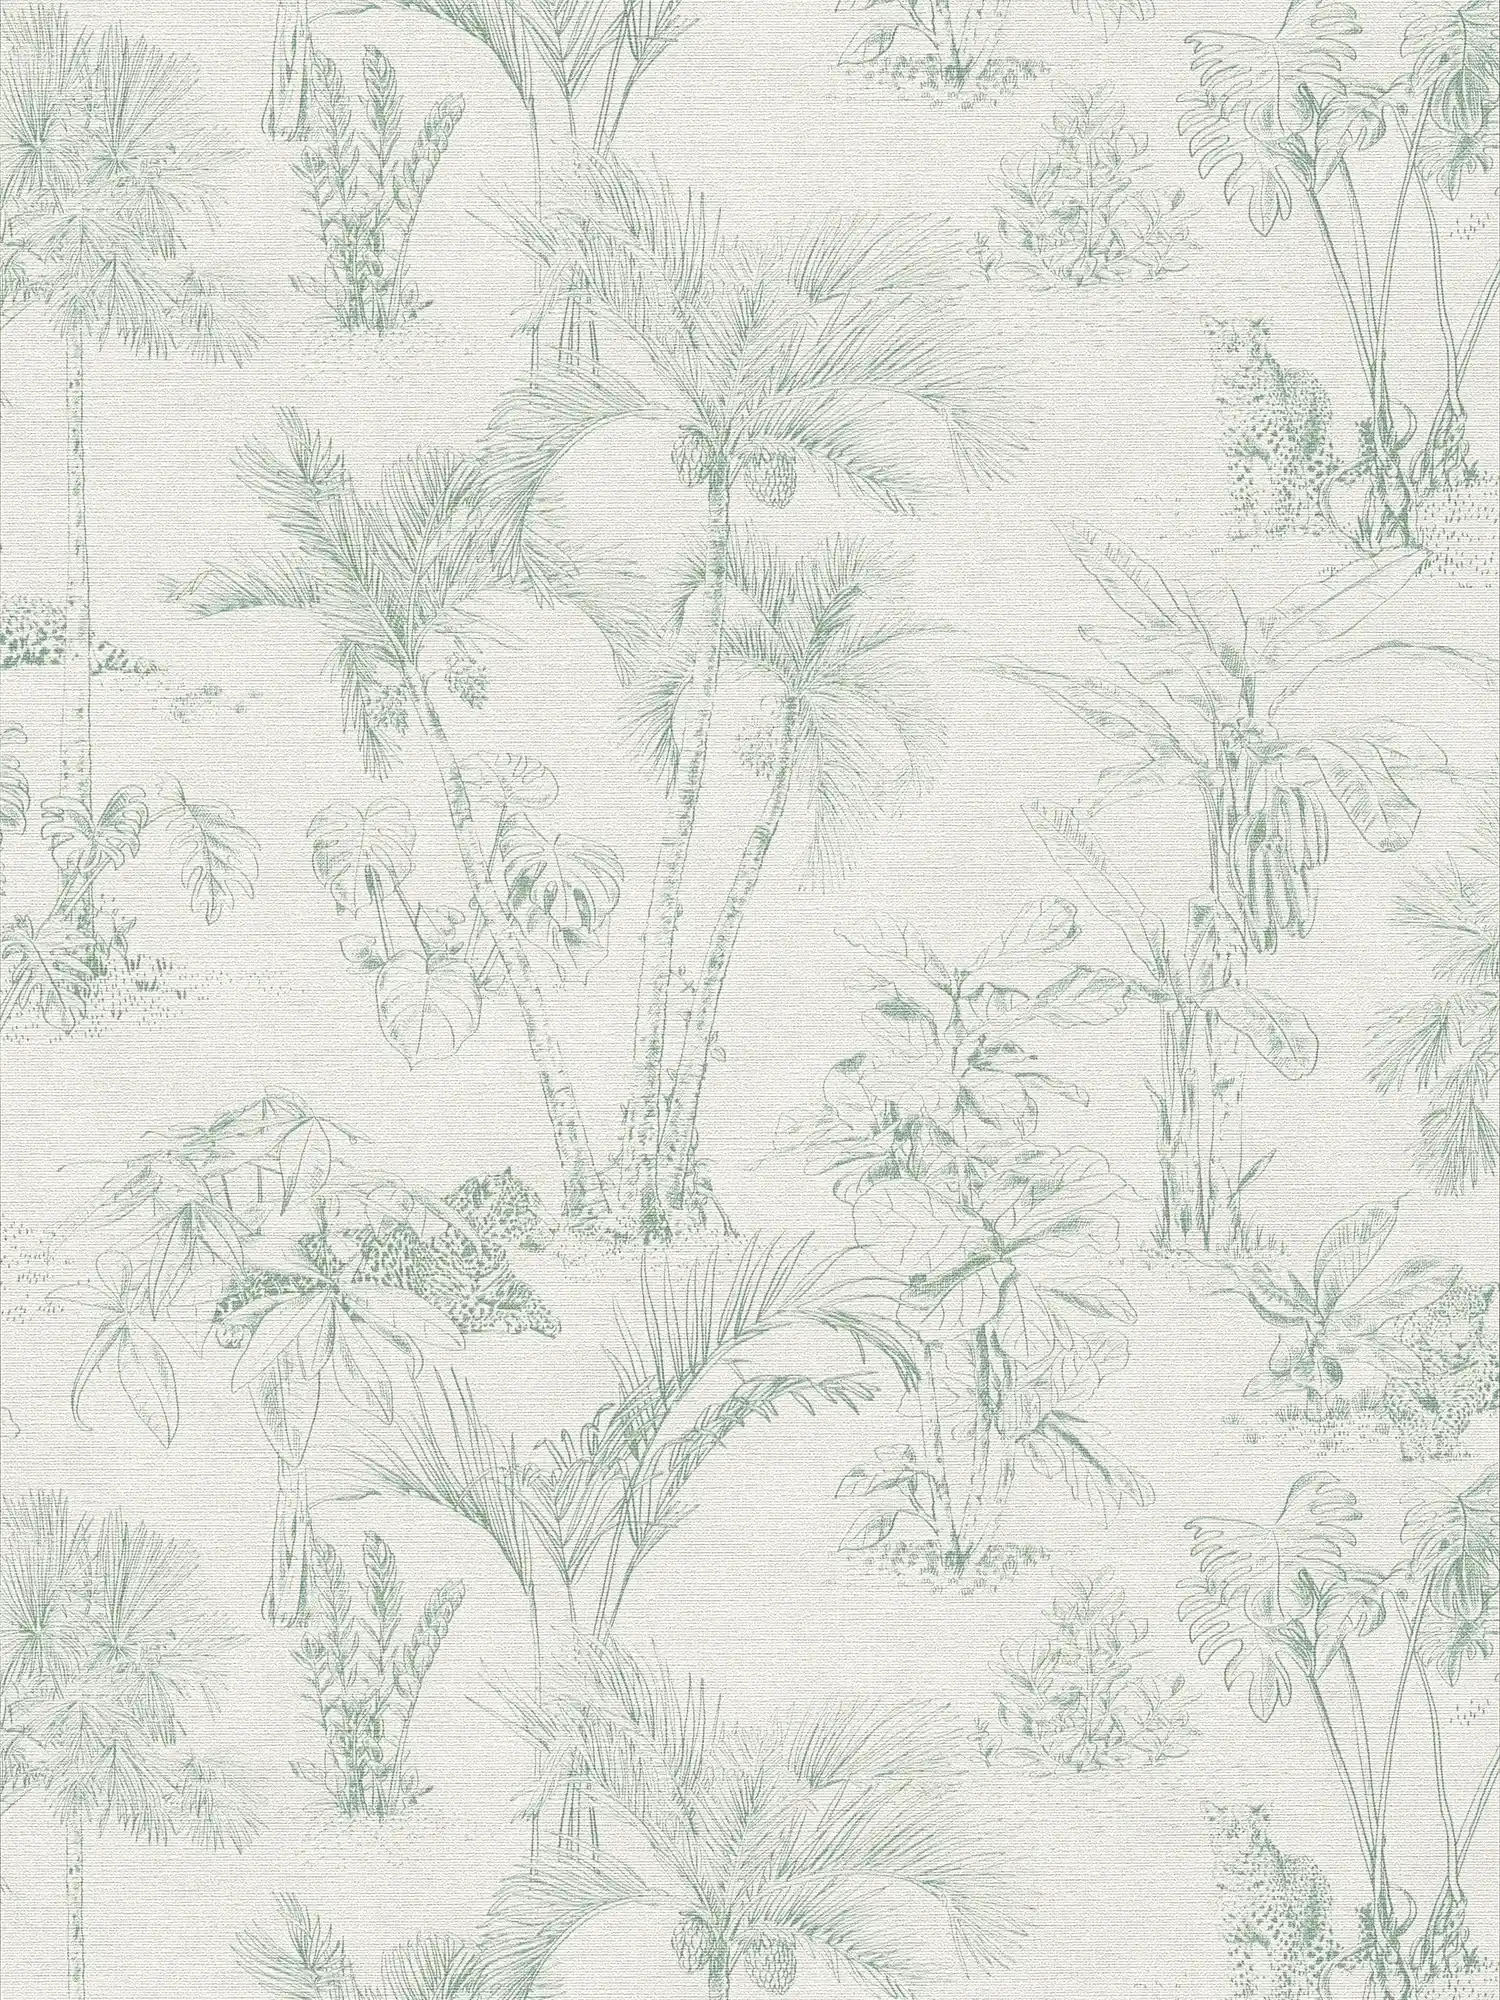 Linnen-look behang jungle design met palmbomen - grijs, groen
